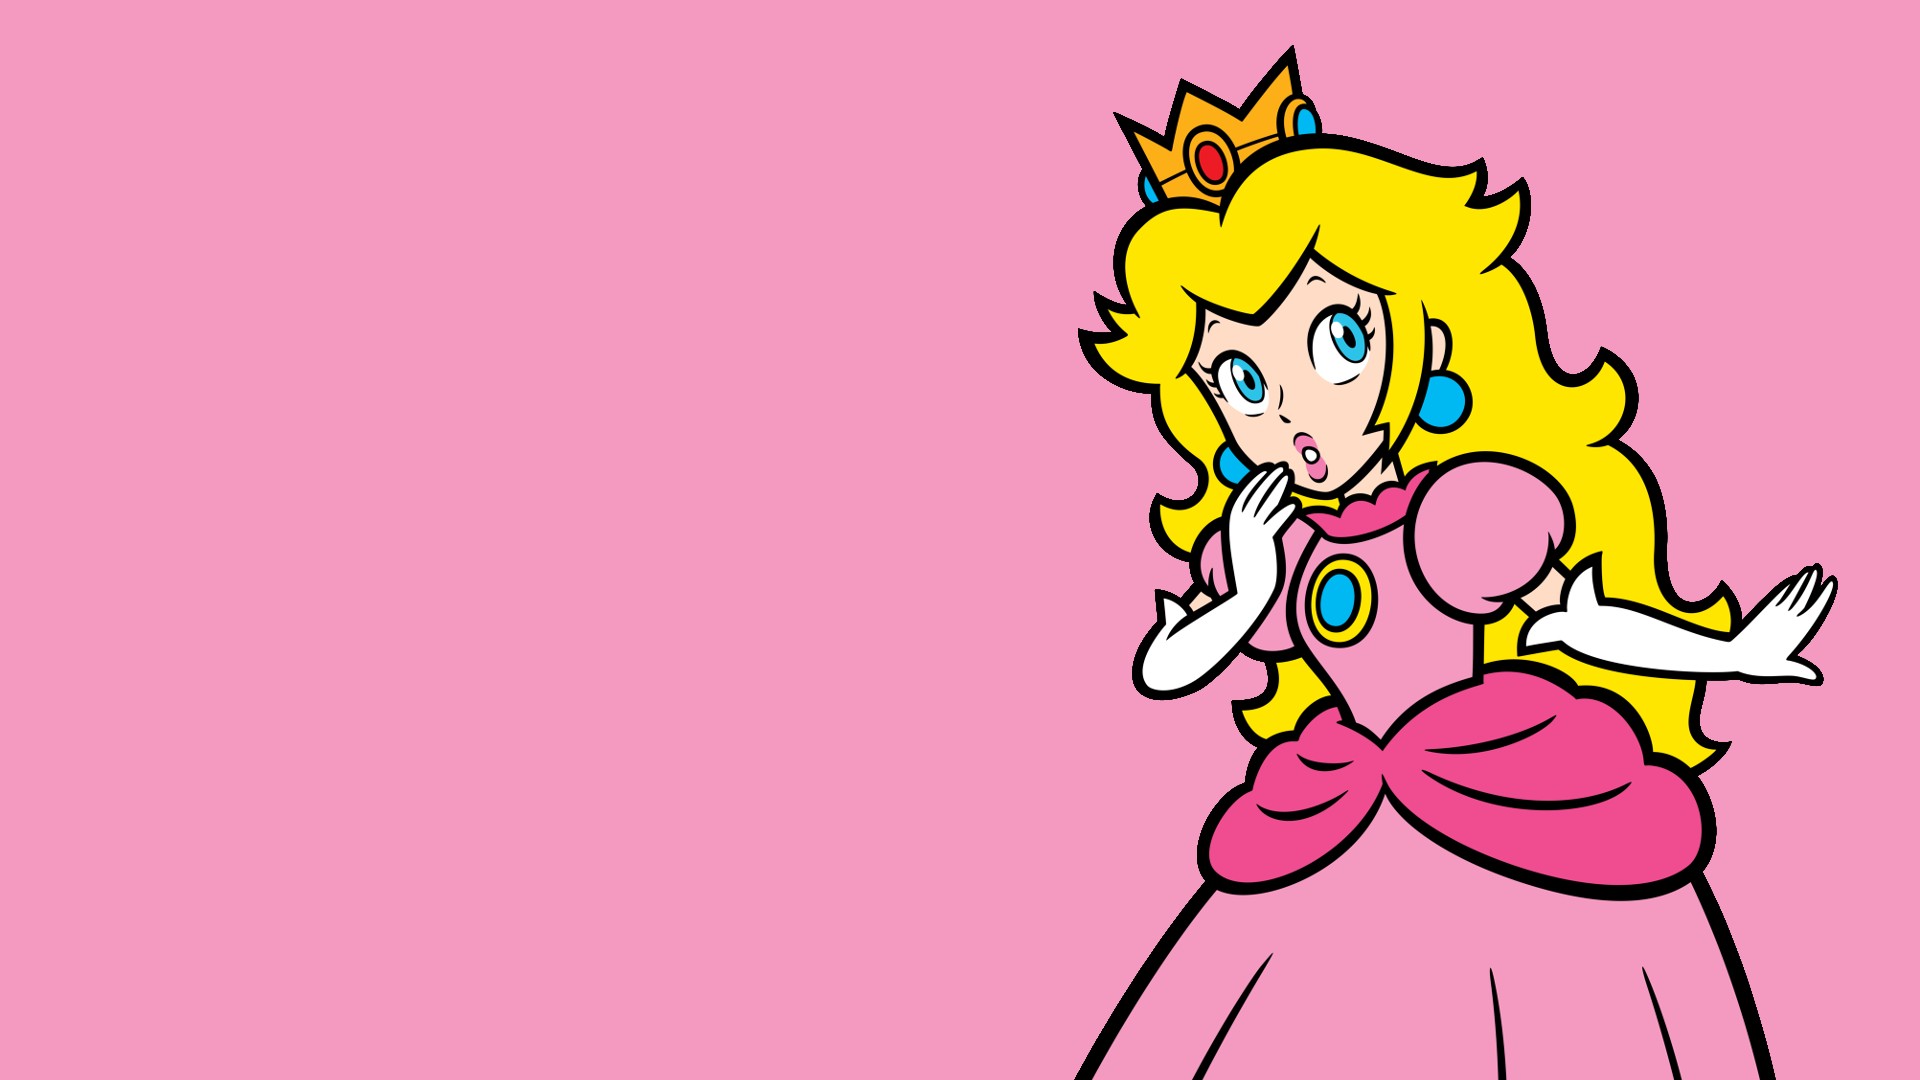 Original Super Mario Bros Princess Peach